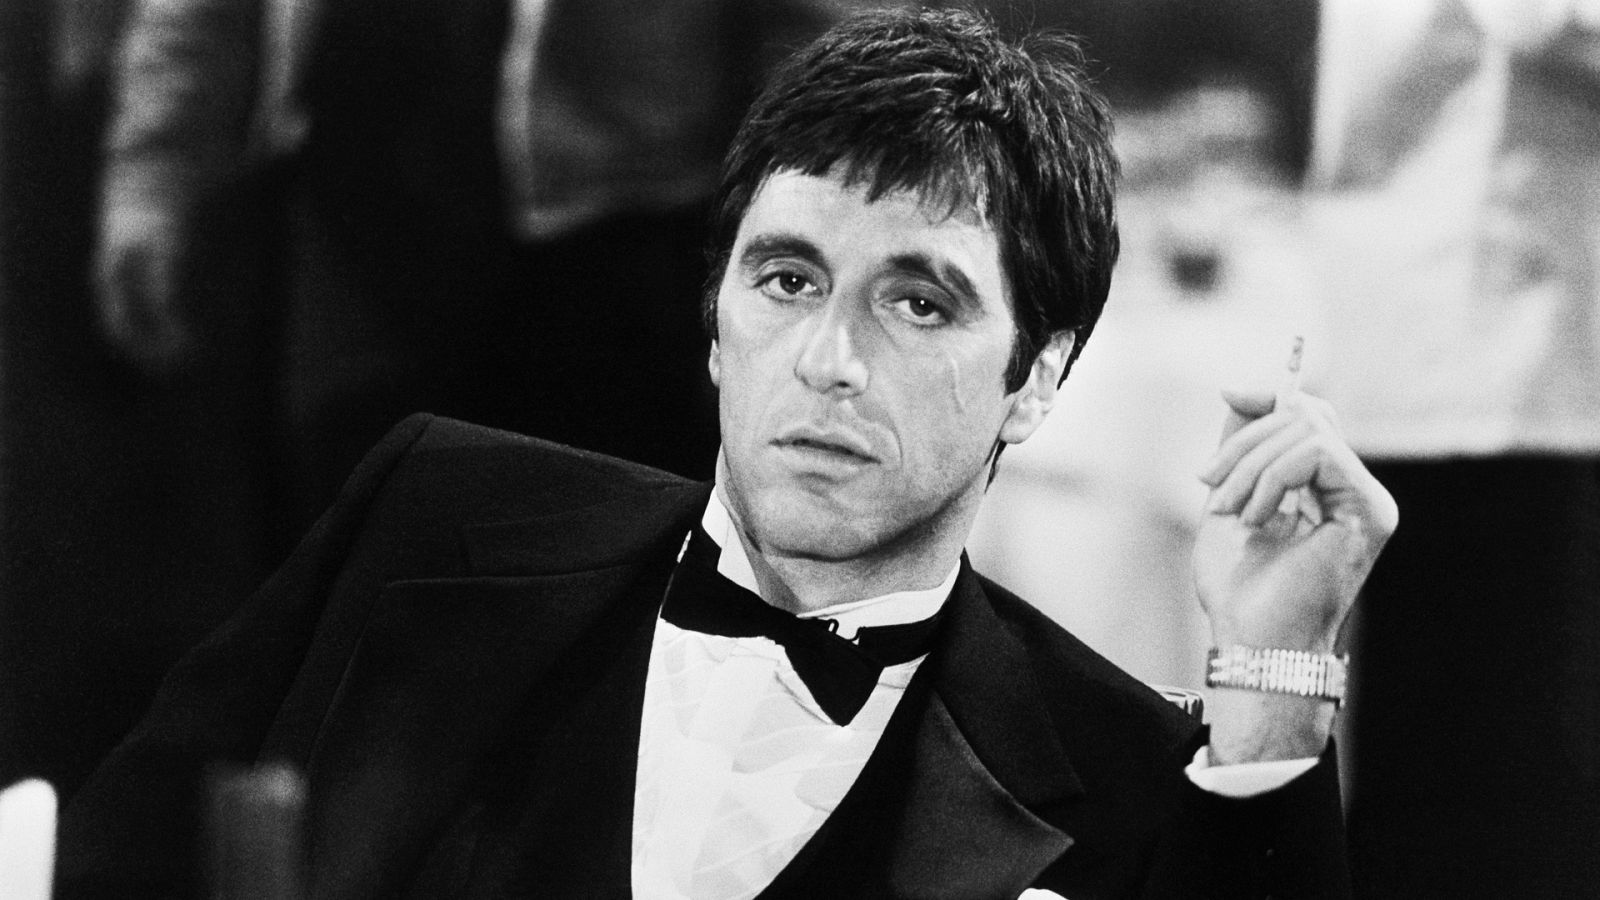 Somos documentales - Al Pacino. El Bronx y la furia - Documental en RTVE